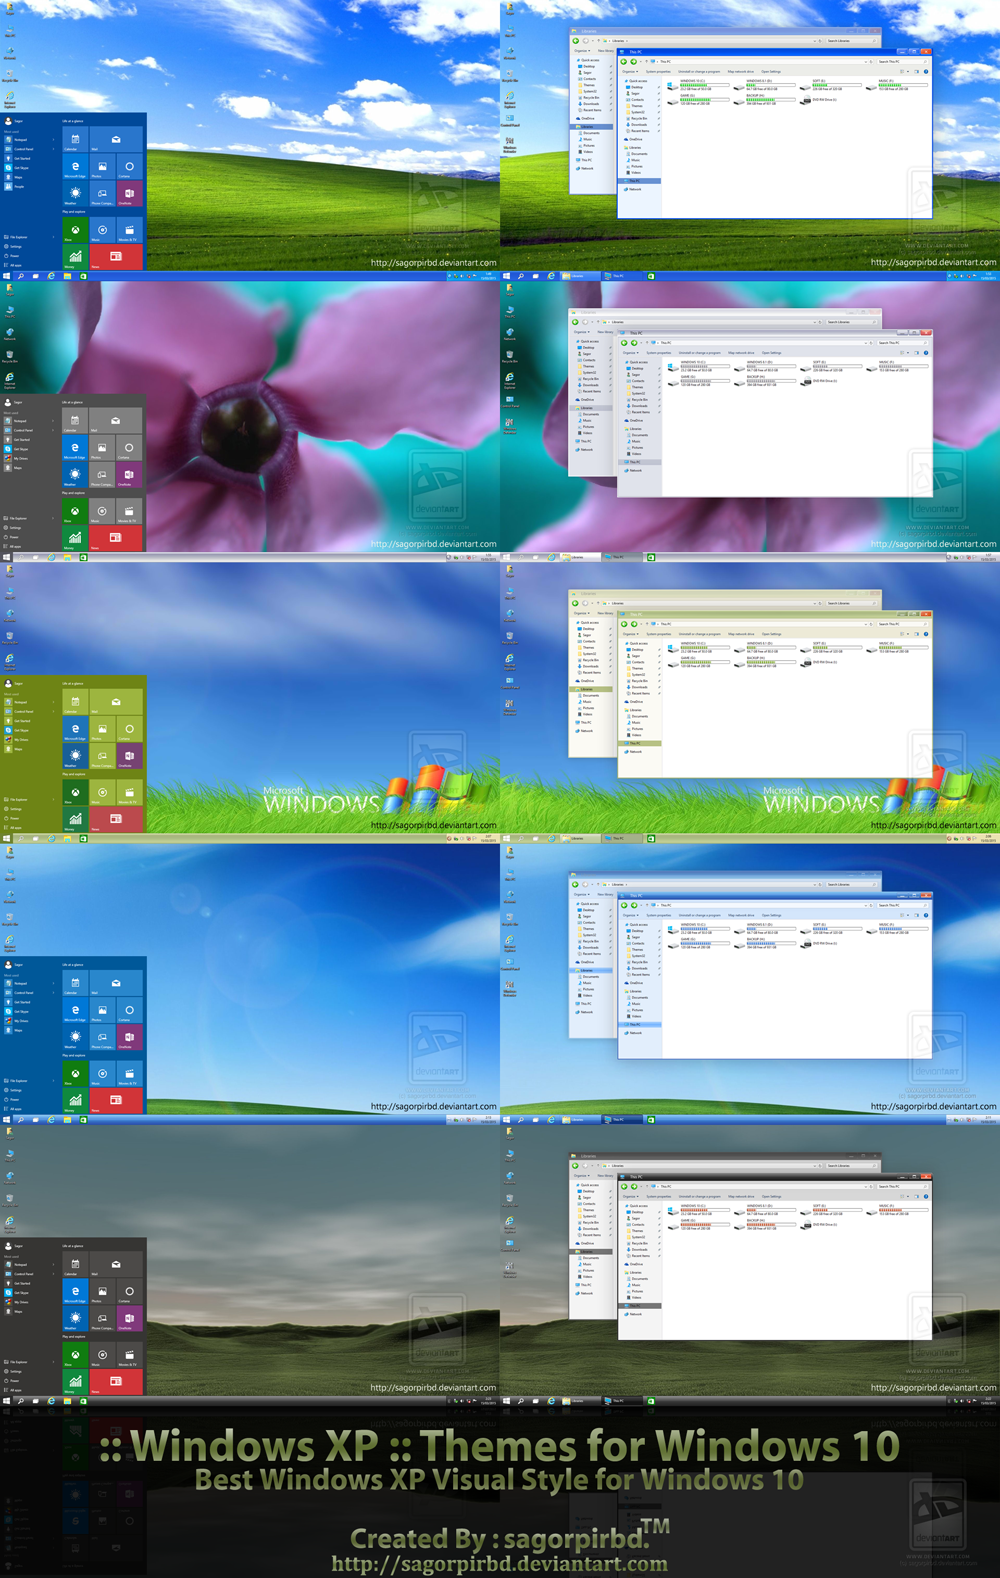 jiotv pc download windows 10